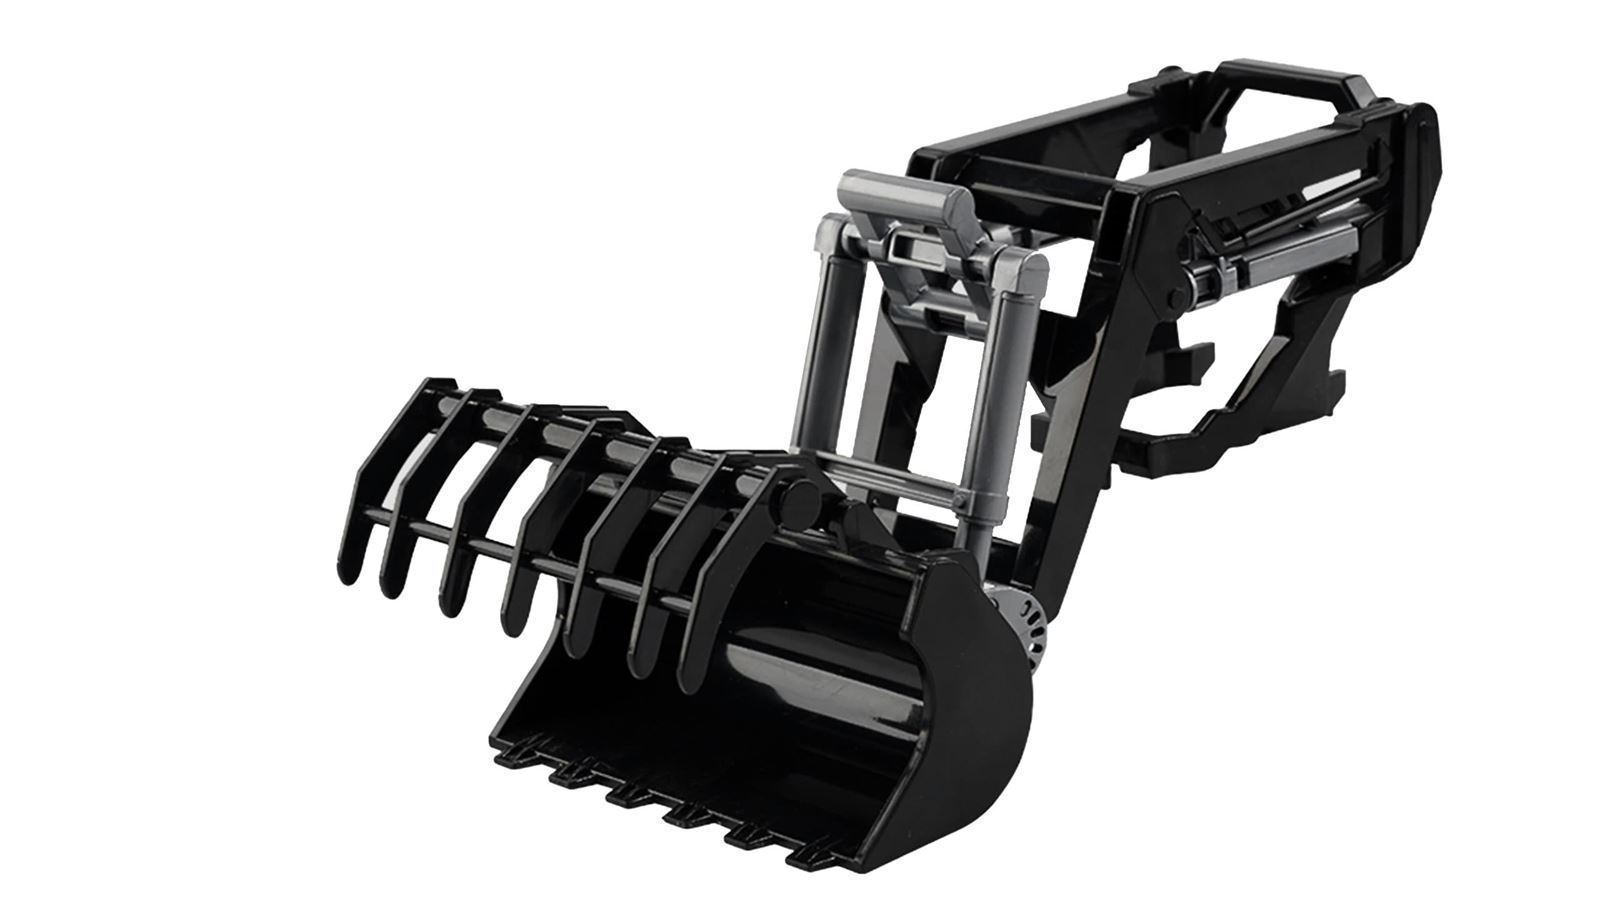 Tractor RC con cargador frontal de juguete con luz y sonido 1:24 - Imagen 3